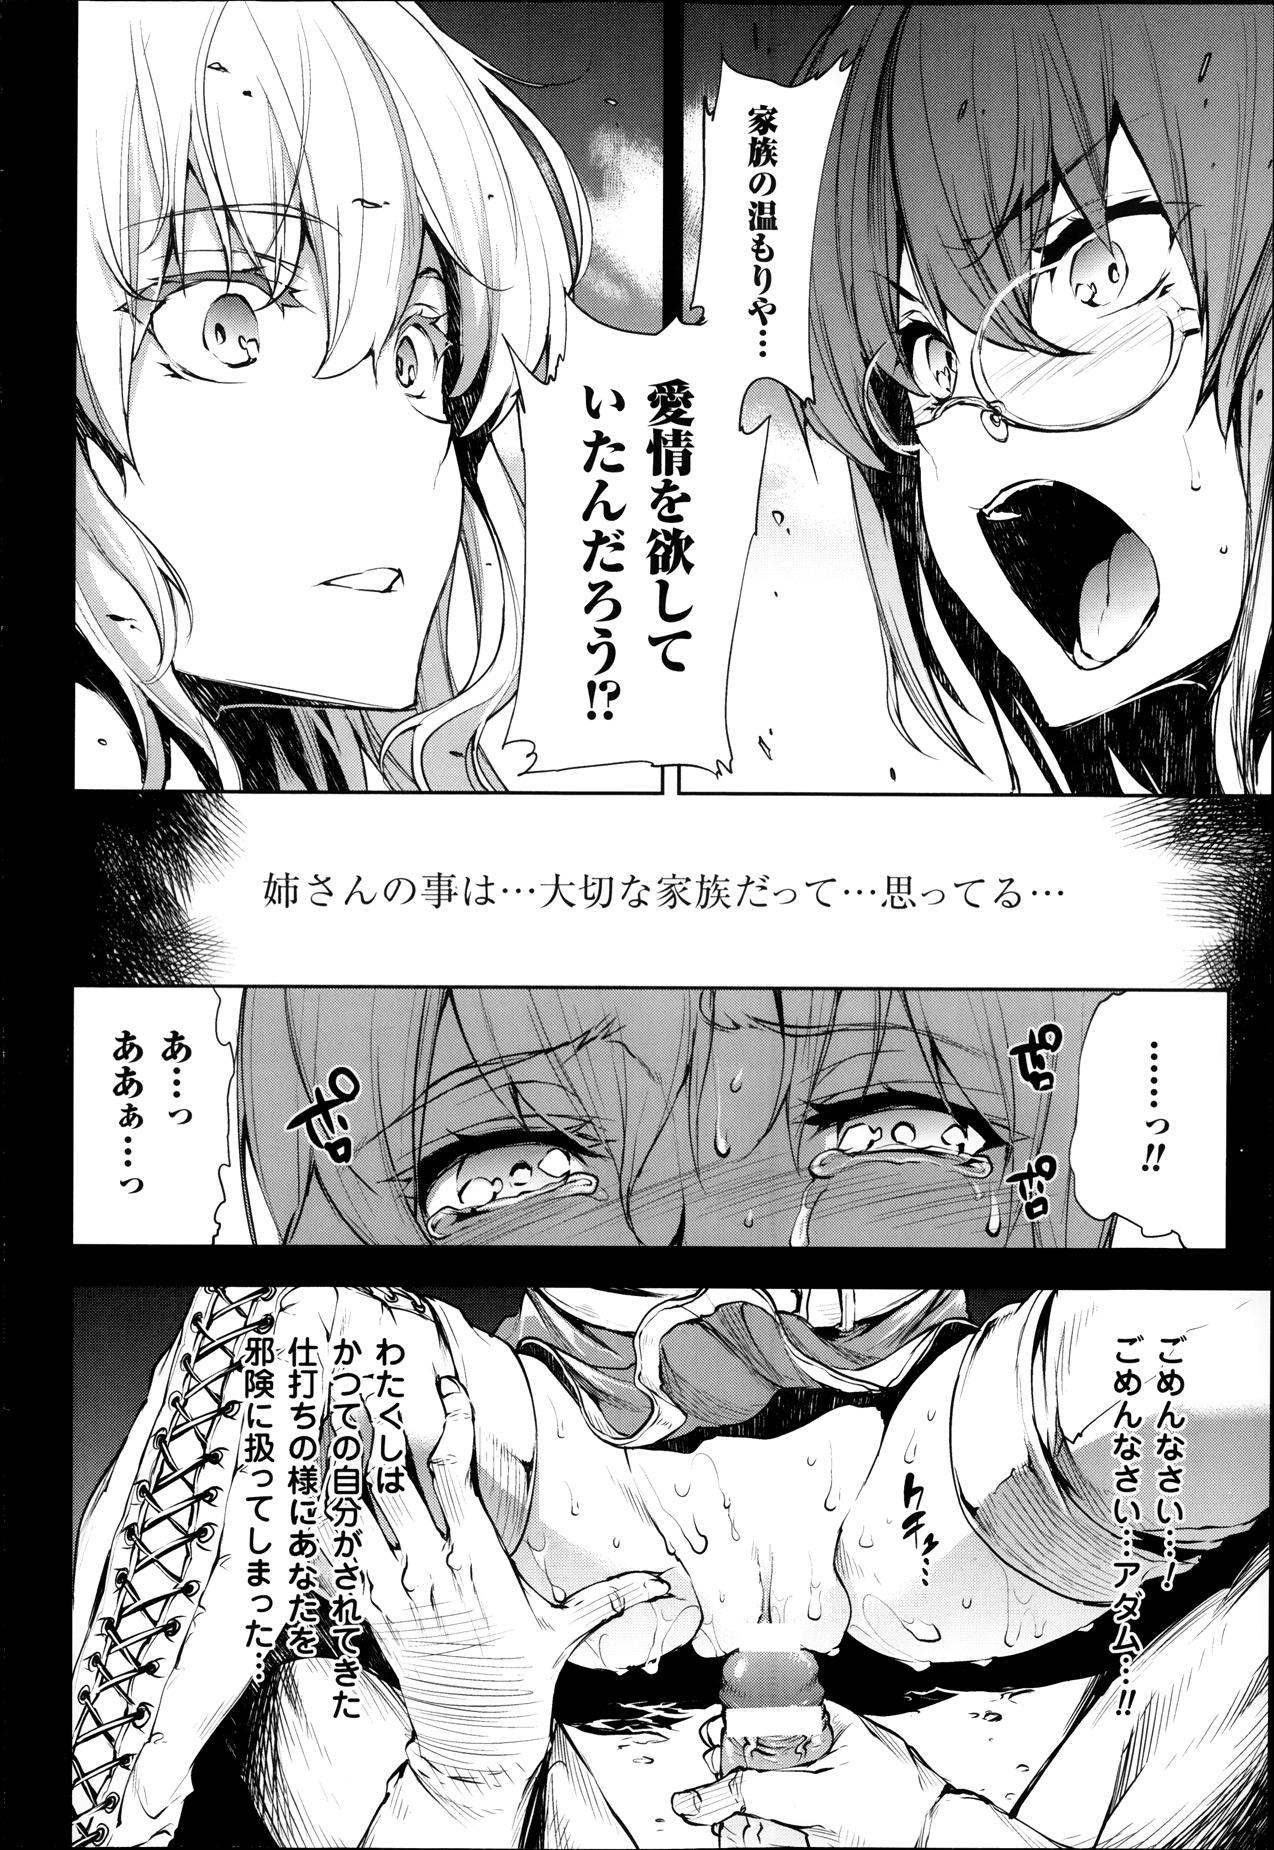 [Erect Sawaru] Shinkyoku no Grimoire -PANDRA saga 2nd story- Ch 07-9.5 76